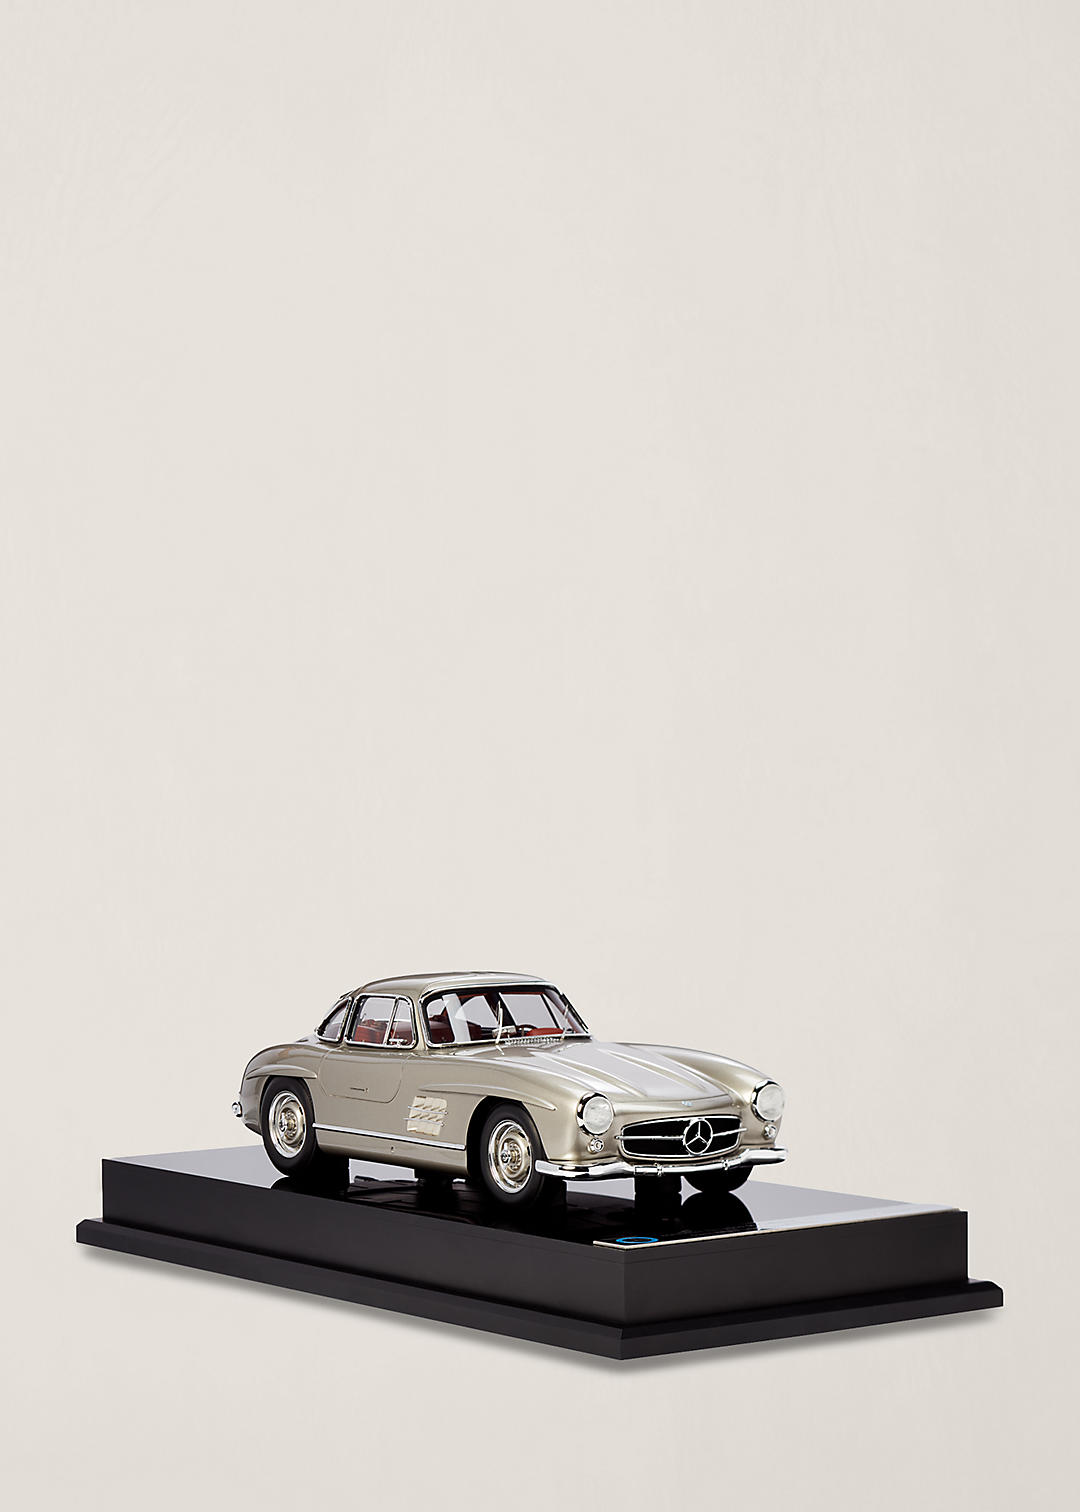 Ralph Lauren Home Mercedes-Benz Gullwing Coup&#233; 1